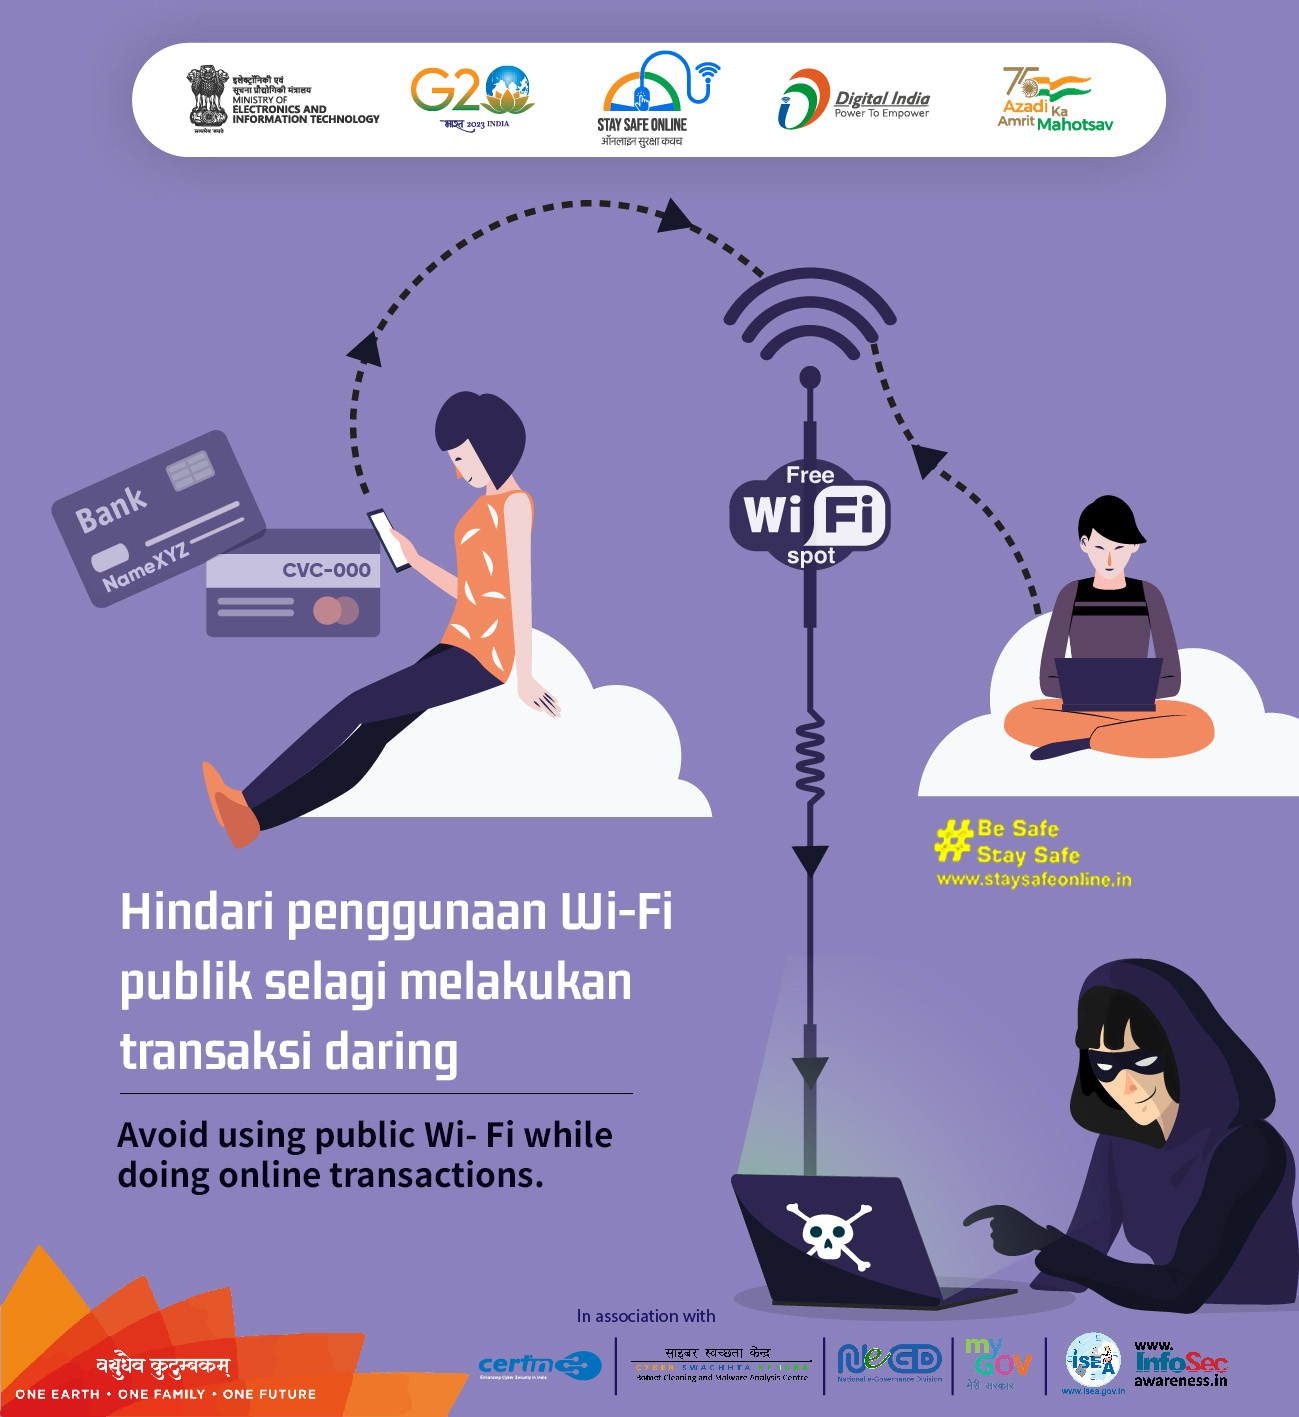 Public wi-fi